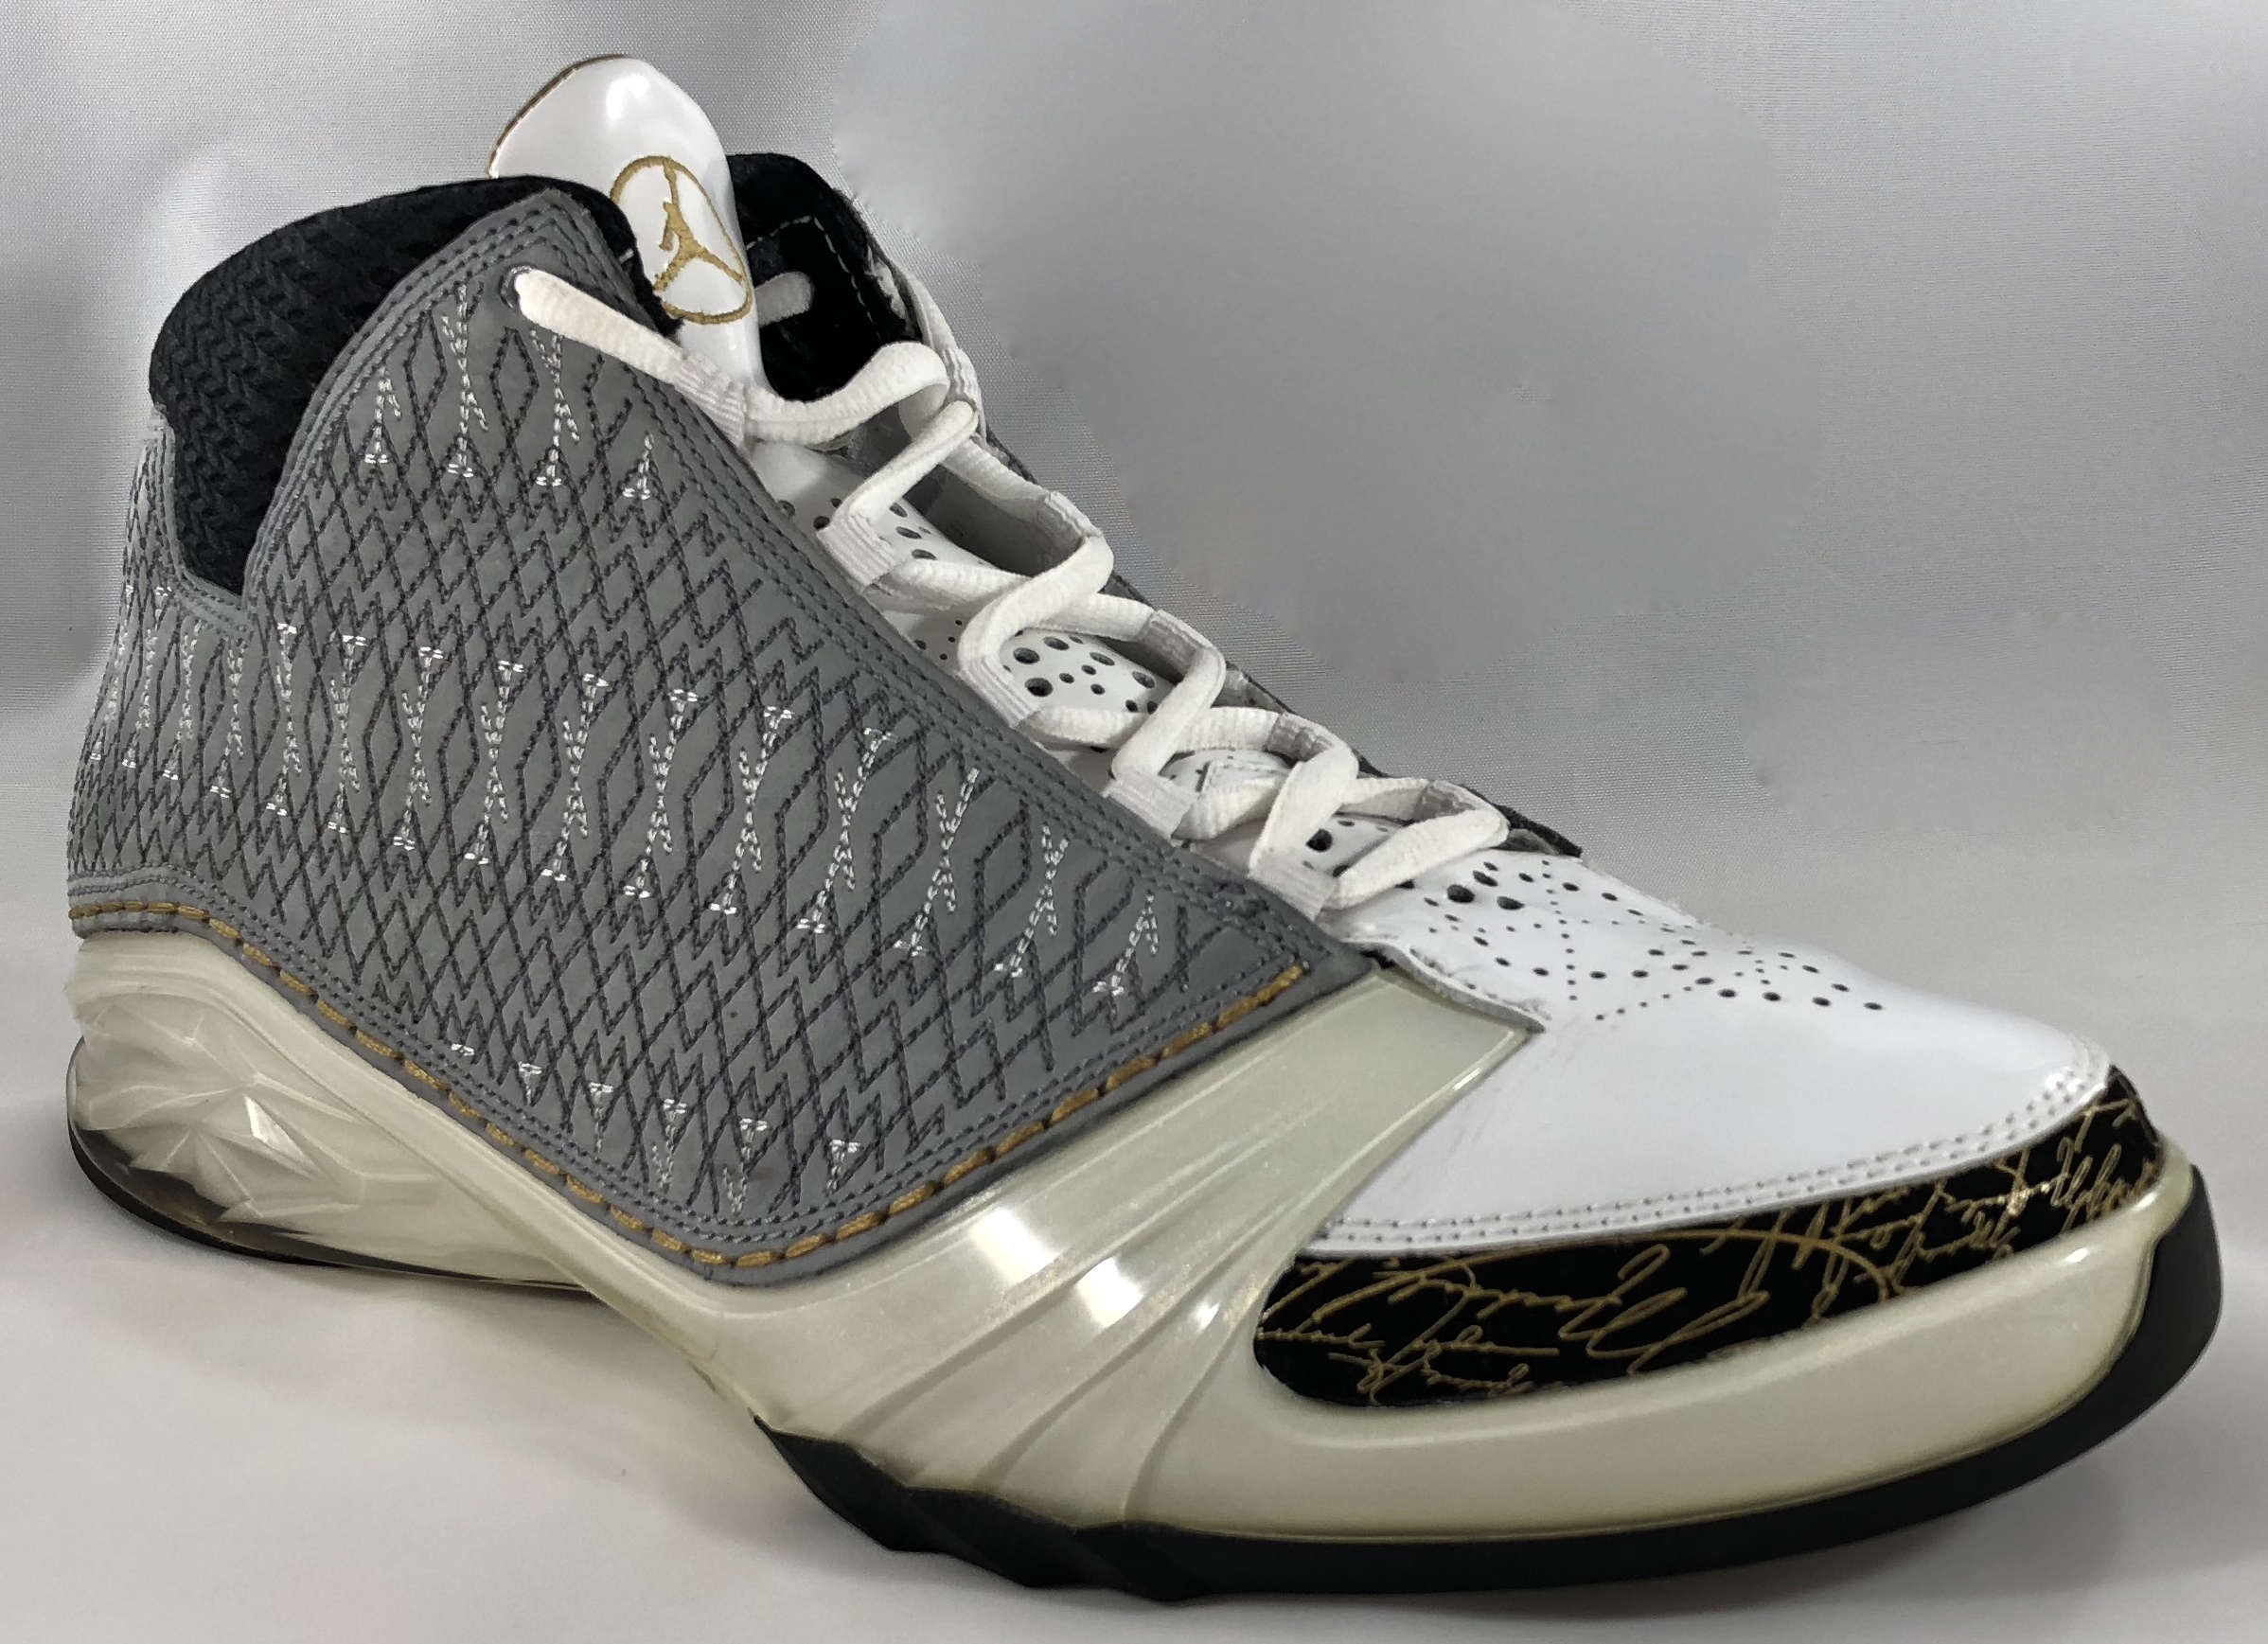 Air Jordan 23 OG (Worn) - Sneakers 